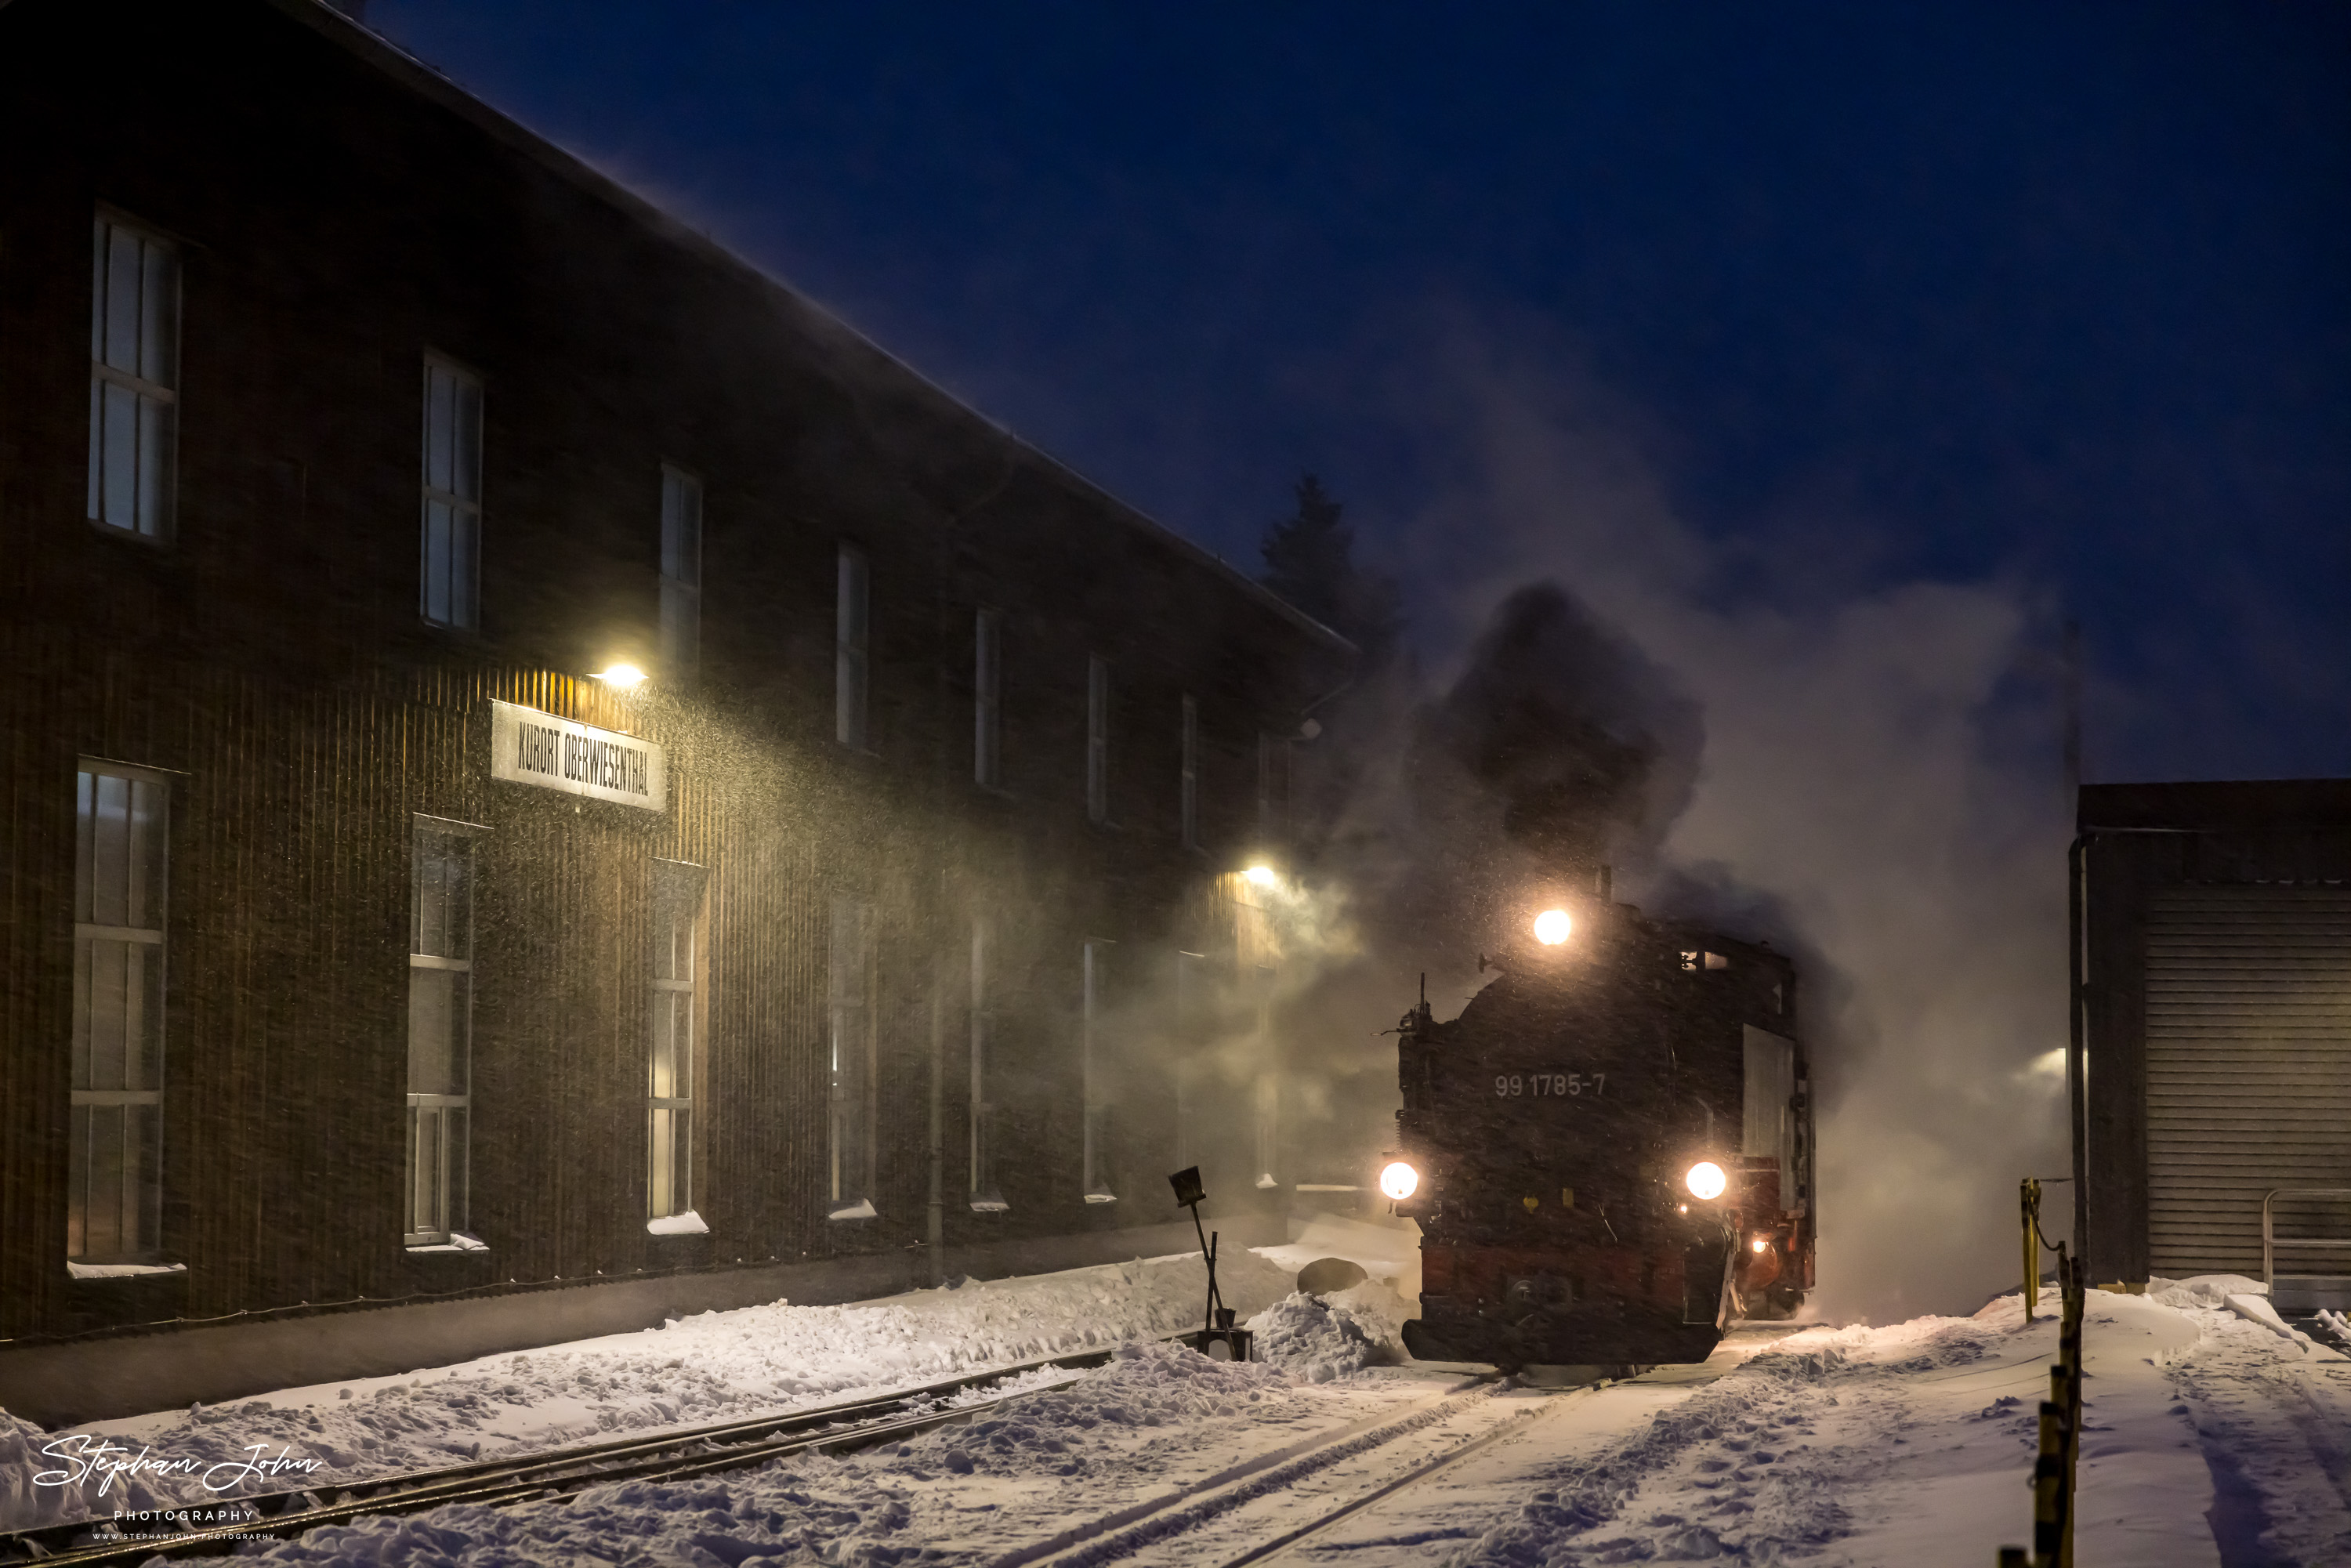 Im Schneetreiben setzt Lok 99 1785-7 in Oberwiesenthal an den Zug P 1006 nach Cranzahl